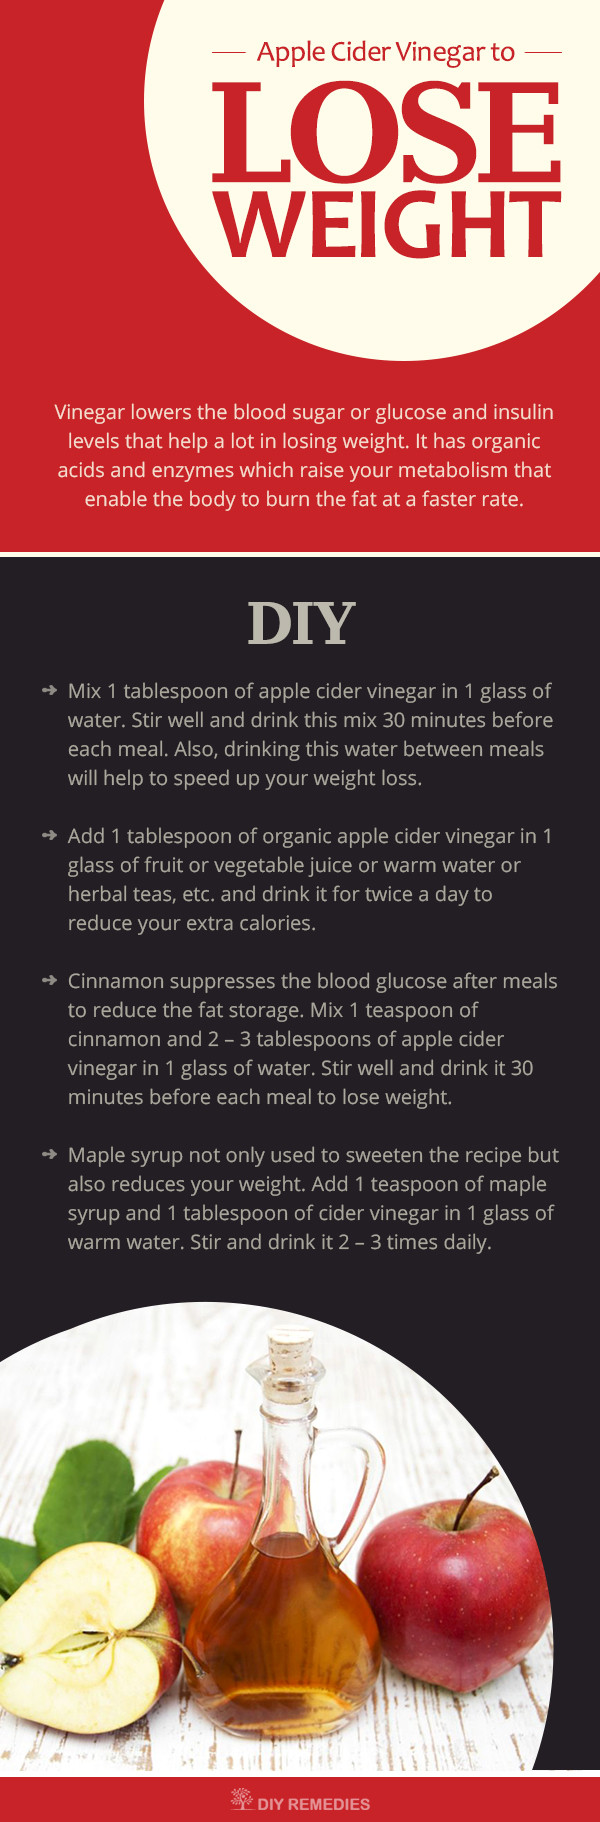 Apple Cider Vinegar Weight Loss Recipes
 Apple Cider Vinegar For Weight Loss